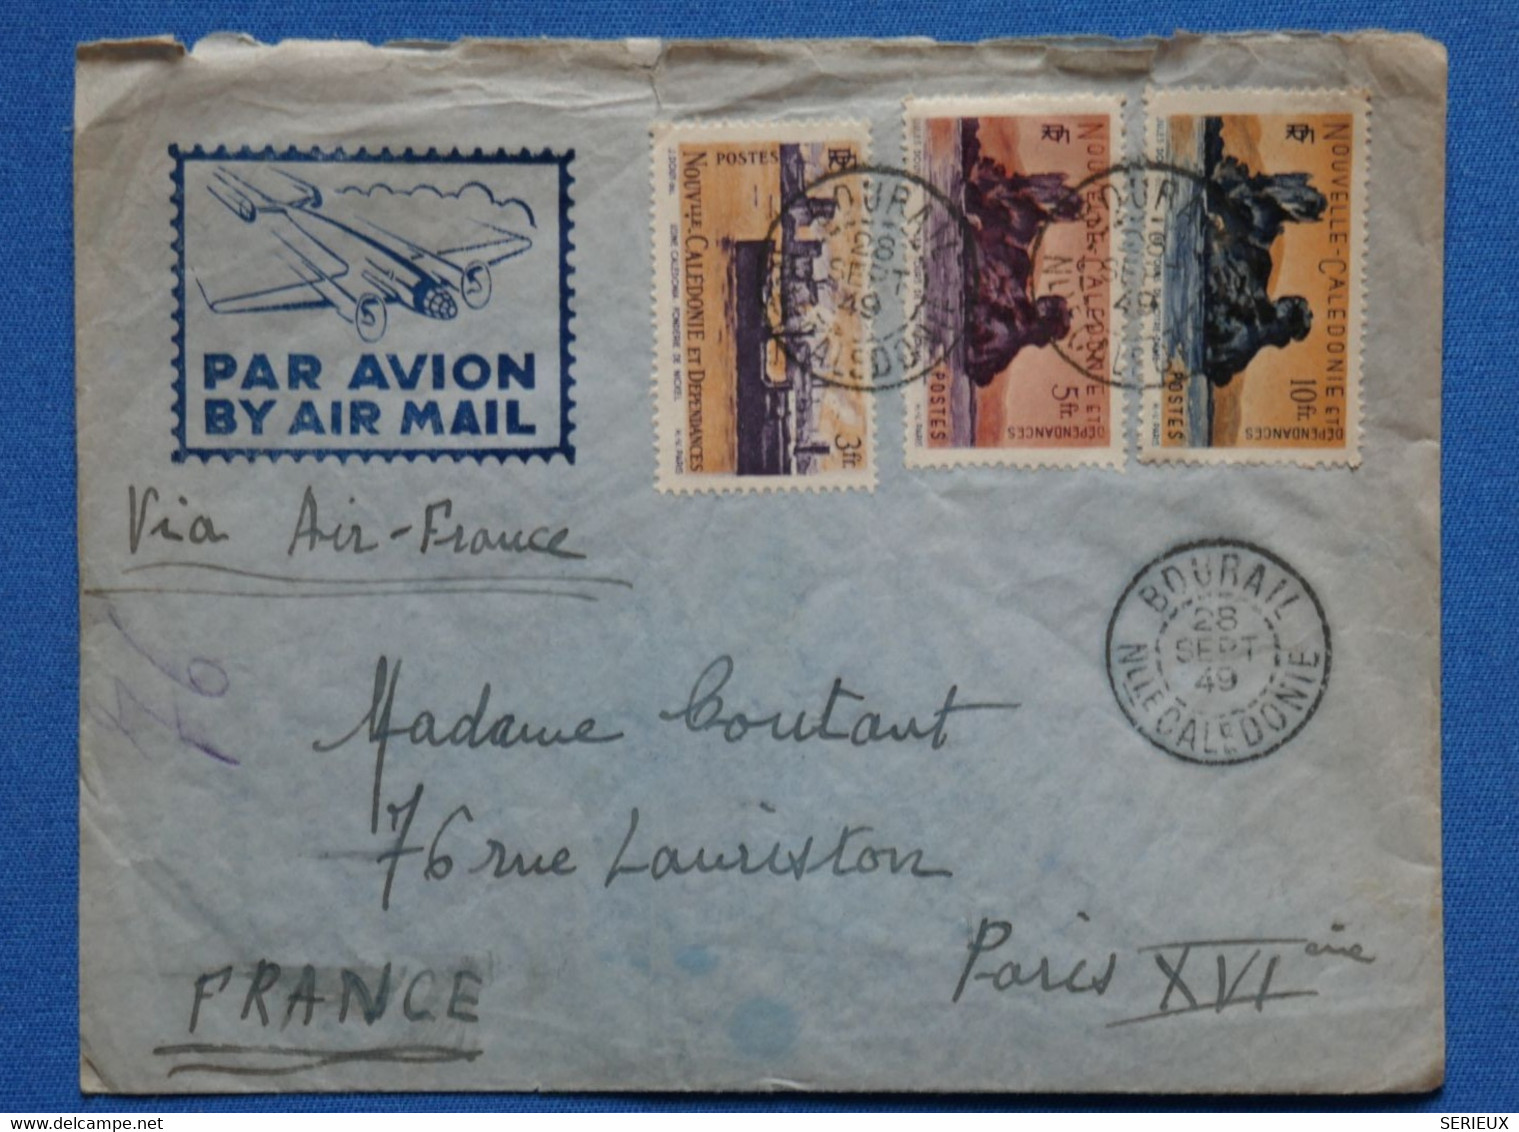 Q11 NOUVELLE CALEDONIE BELLE LETTRE 1949 PREMIER VOL REGULIER BOURAIL POUR PARIS FRANCE+ AFFRANCH. PLAISANT - Storia Postale